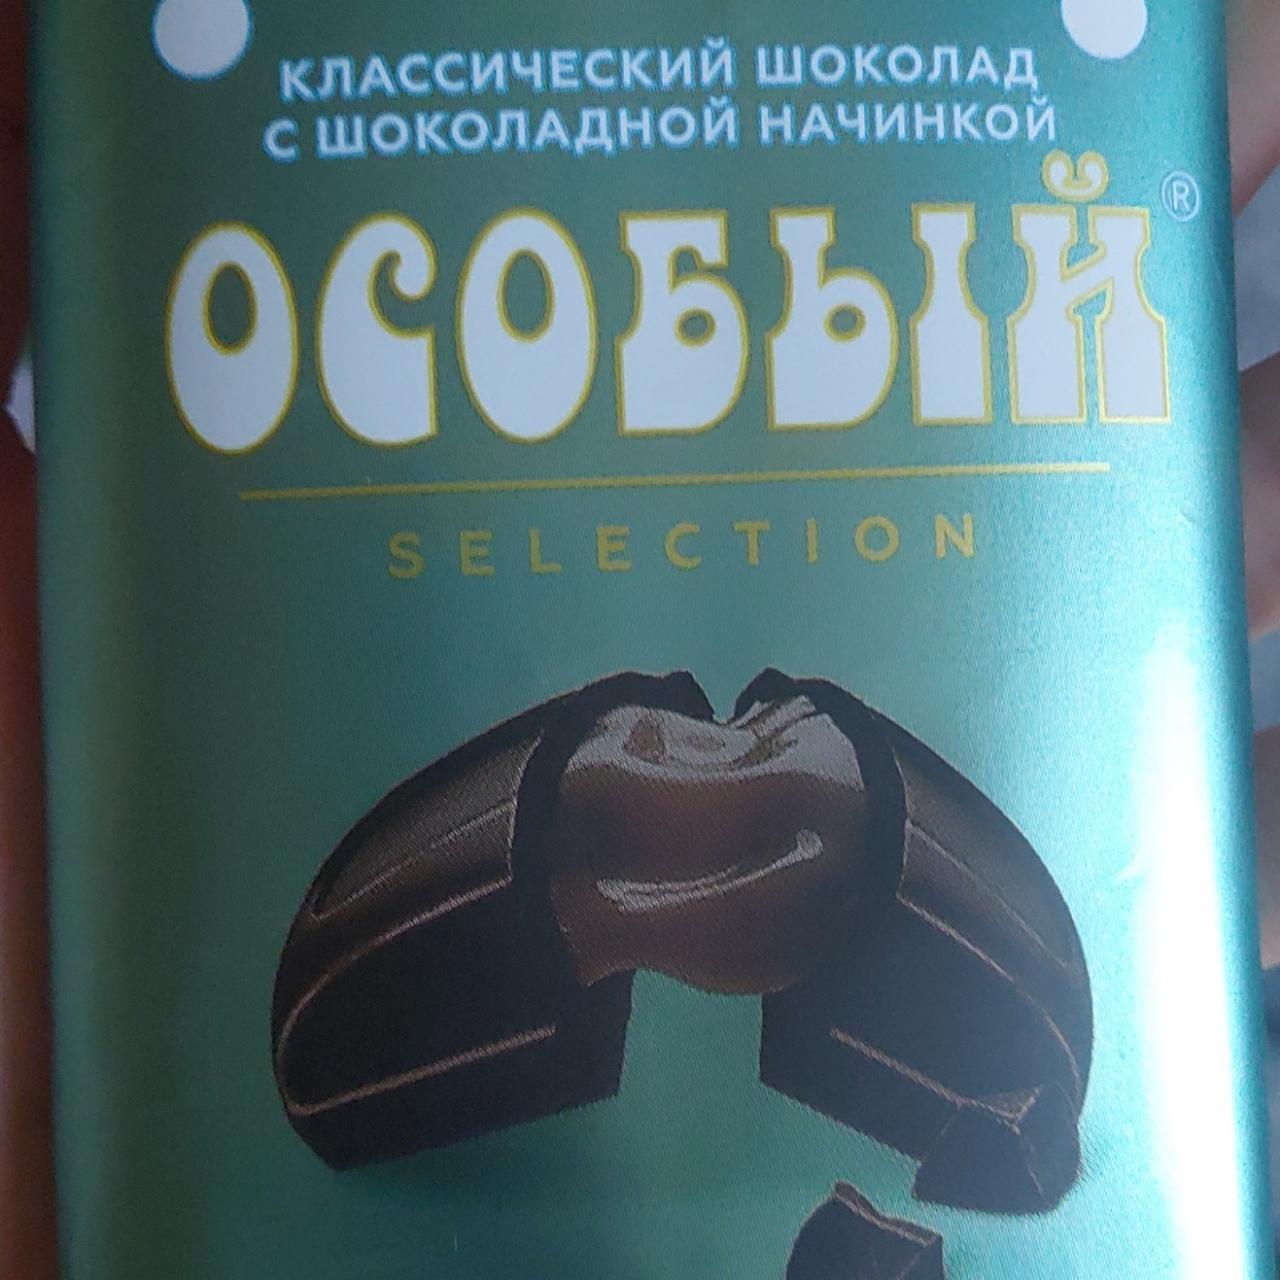 Фото - шоколад особый классический с шоколадной начинкой КФ им. Крупской Н.К.